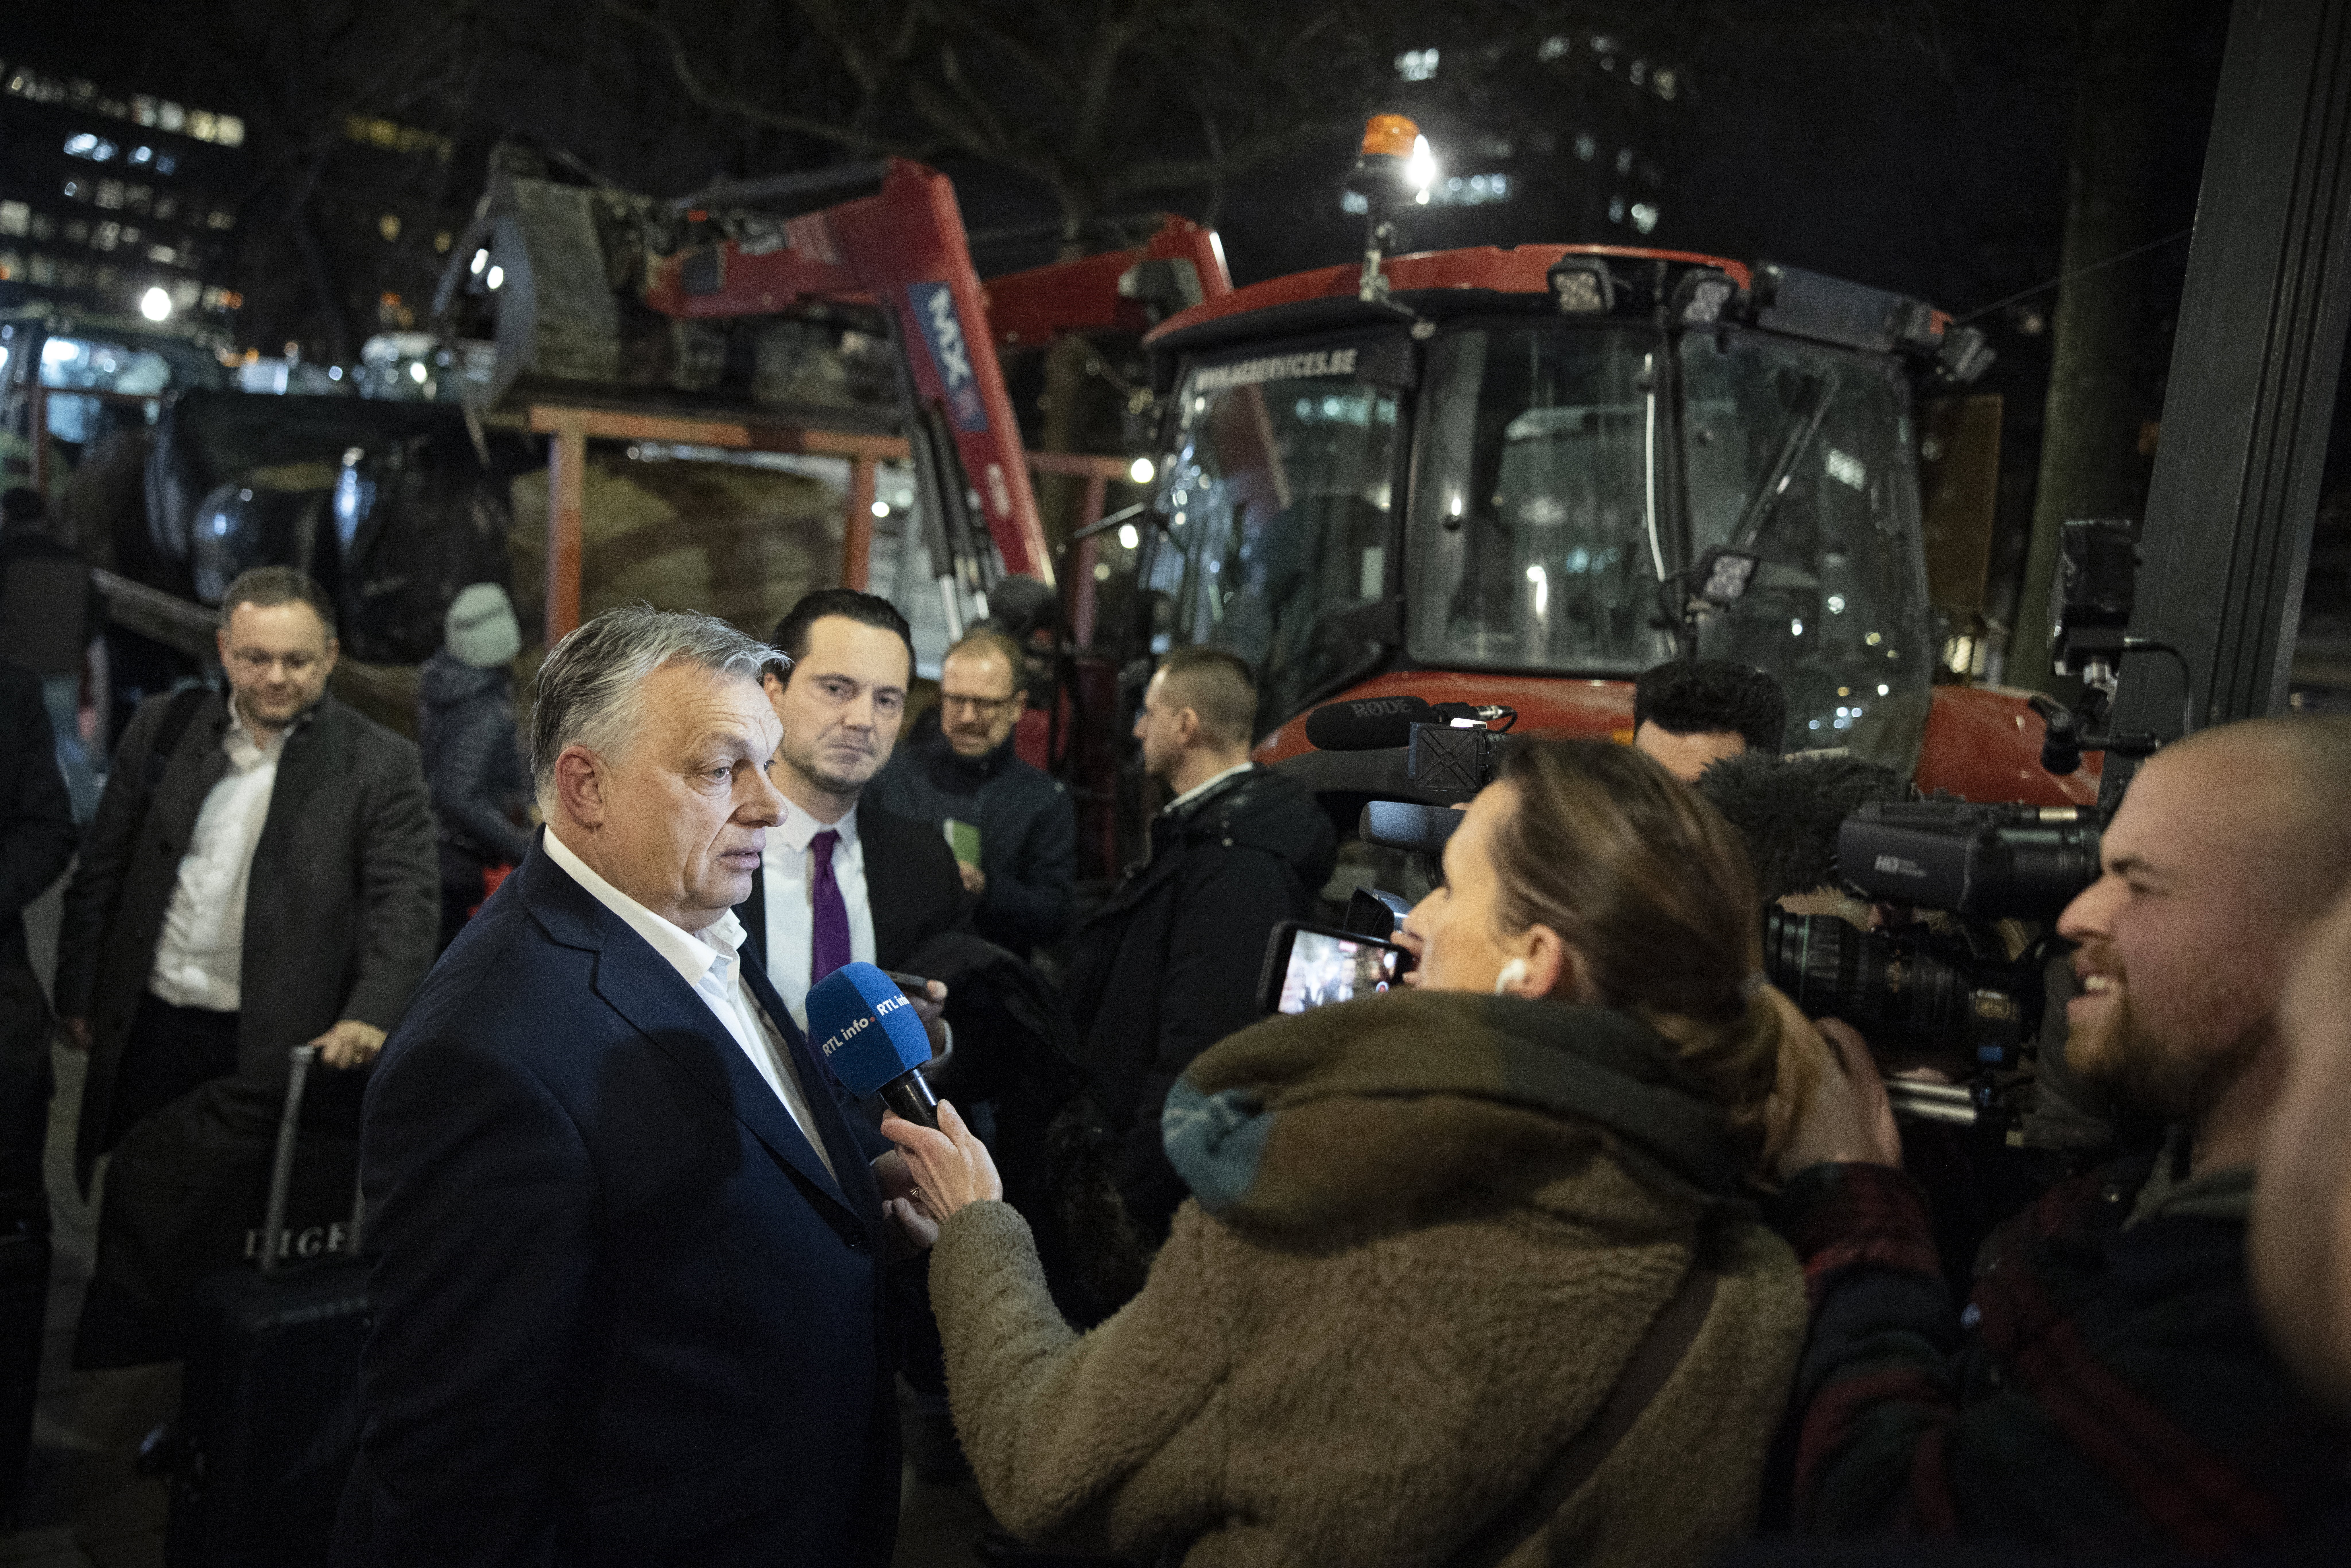 Megkeserítették Orbán Viktor éjszakáját, 10 percenként marhabőgést kellett hallgatnia a szállodában: "Nem volt ellenemre, én falusi gyerek vagyok"